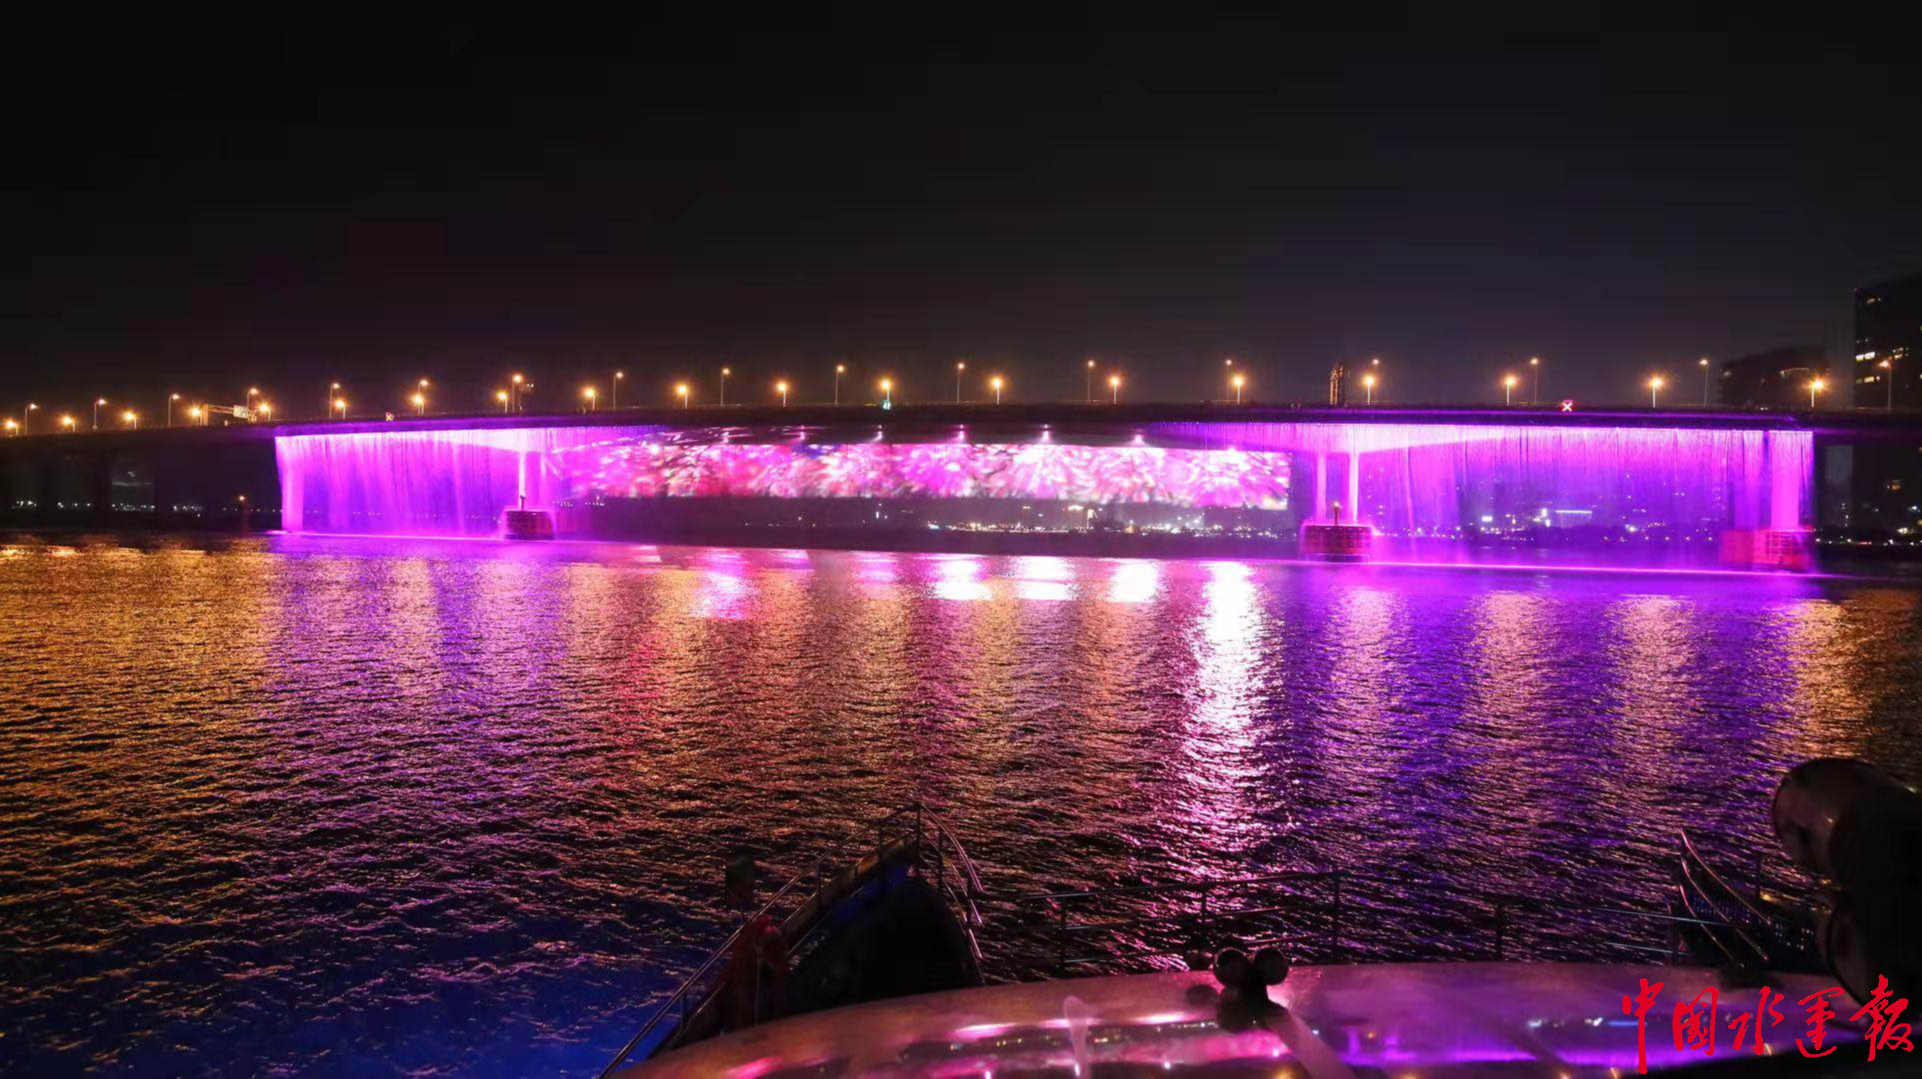 温州瓯江夜游图片